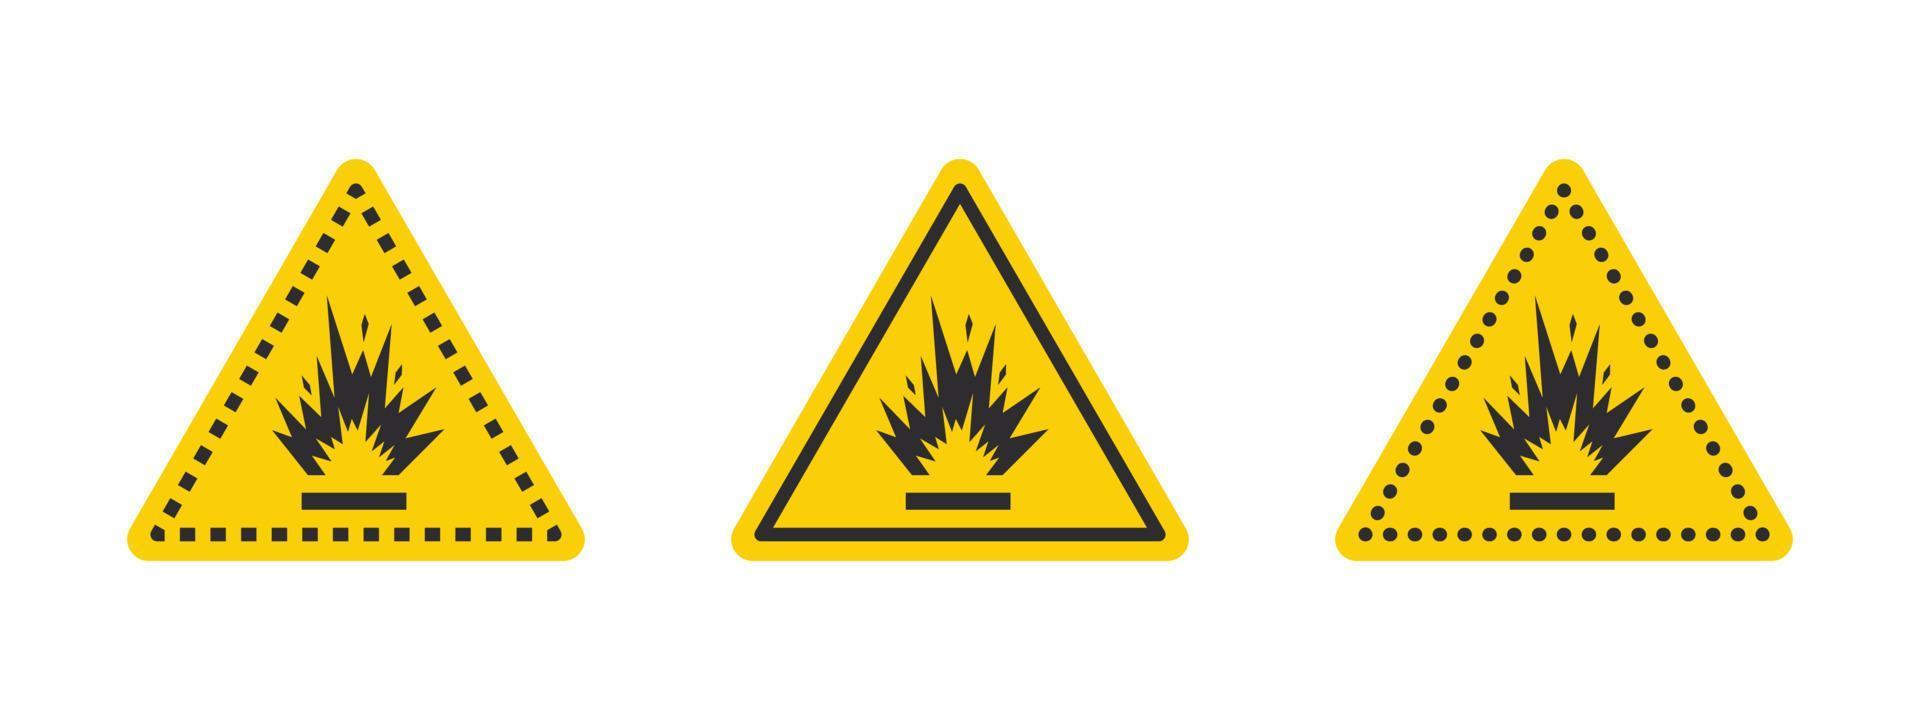 Warnschild für Sprengbereich. Warnzeichen für explosive Flüssigkeiten oder Materialien. Symbole für Sprengstoffe festgelegt. Vektorsymbole vektor